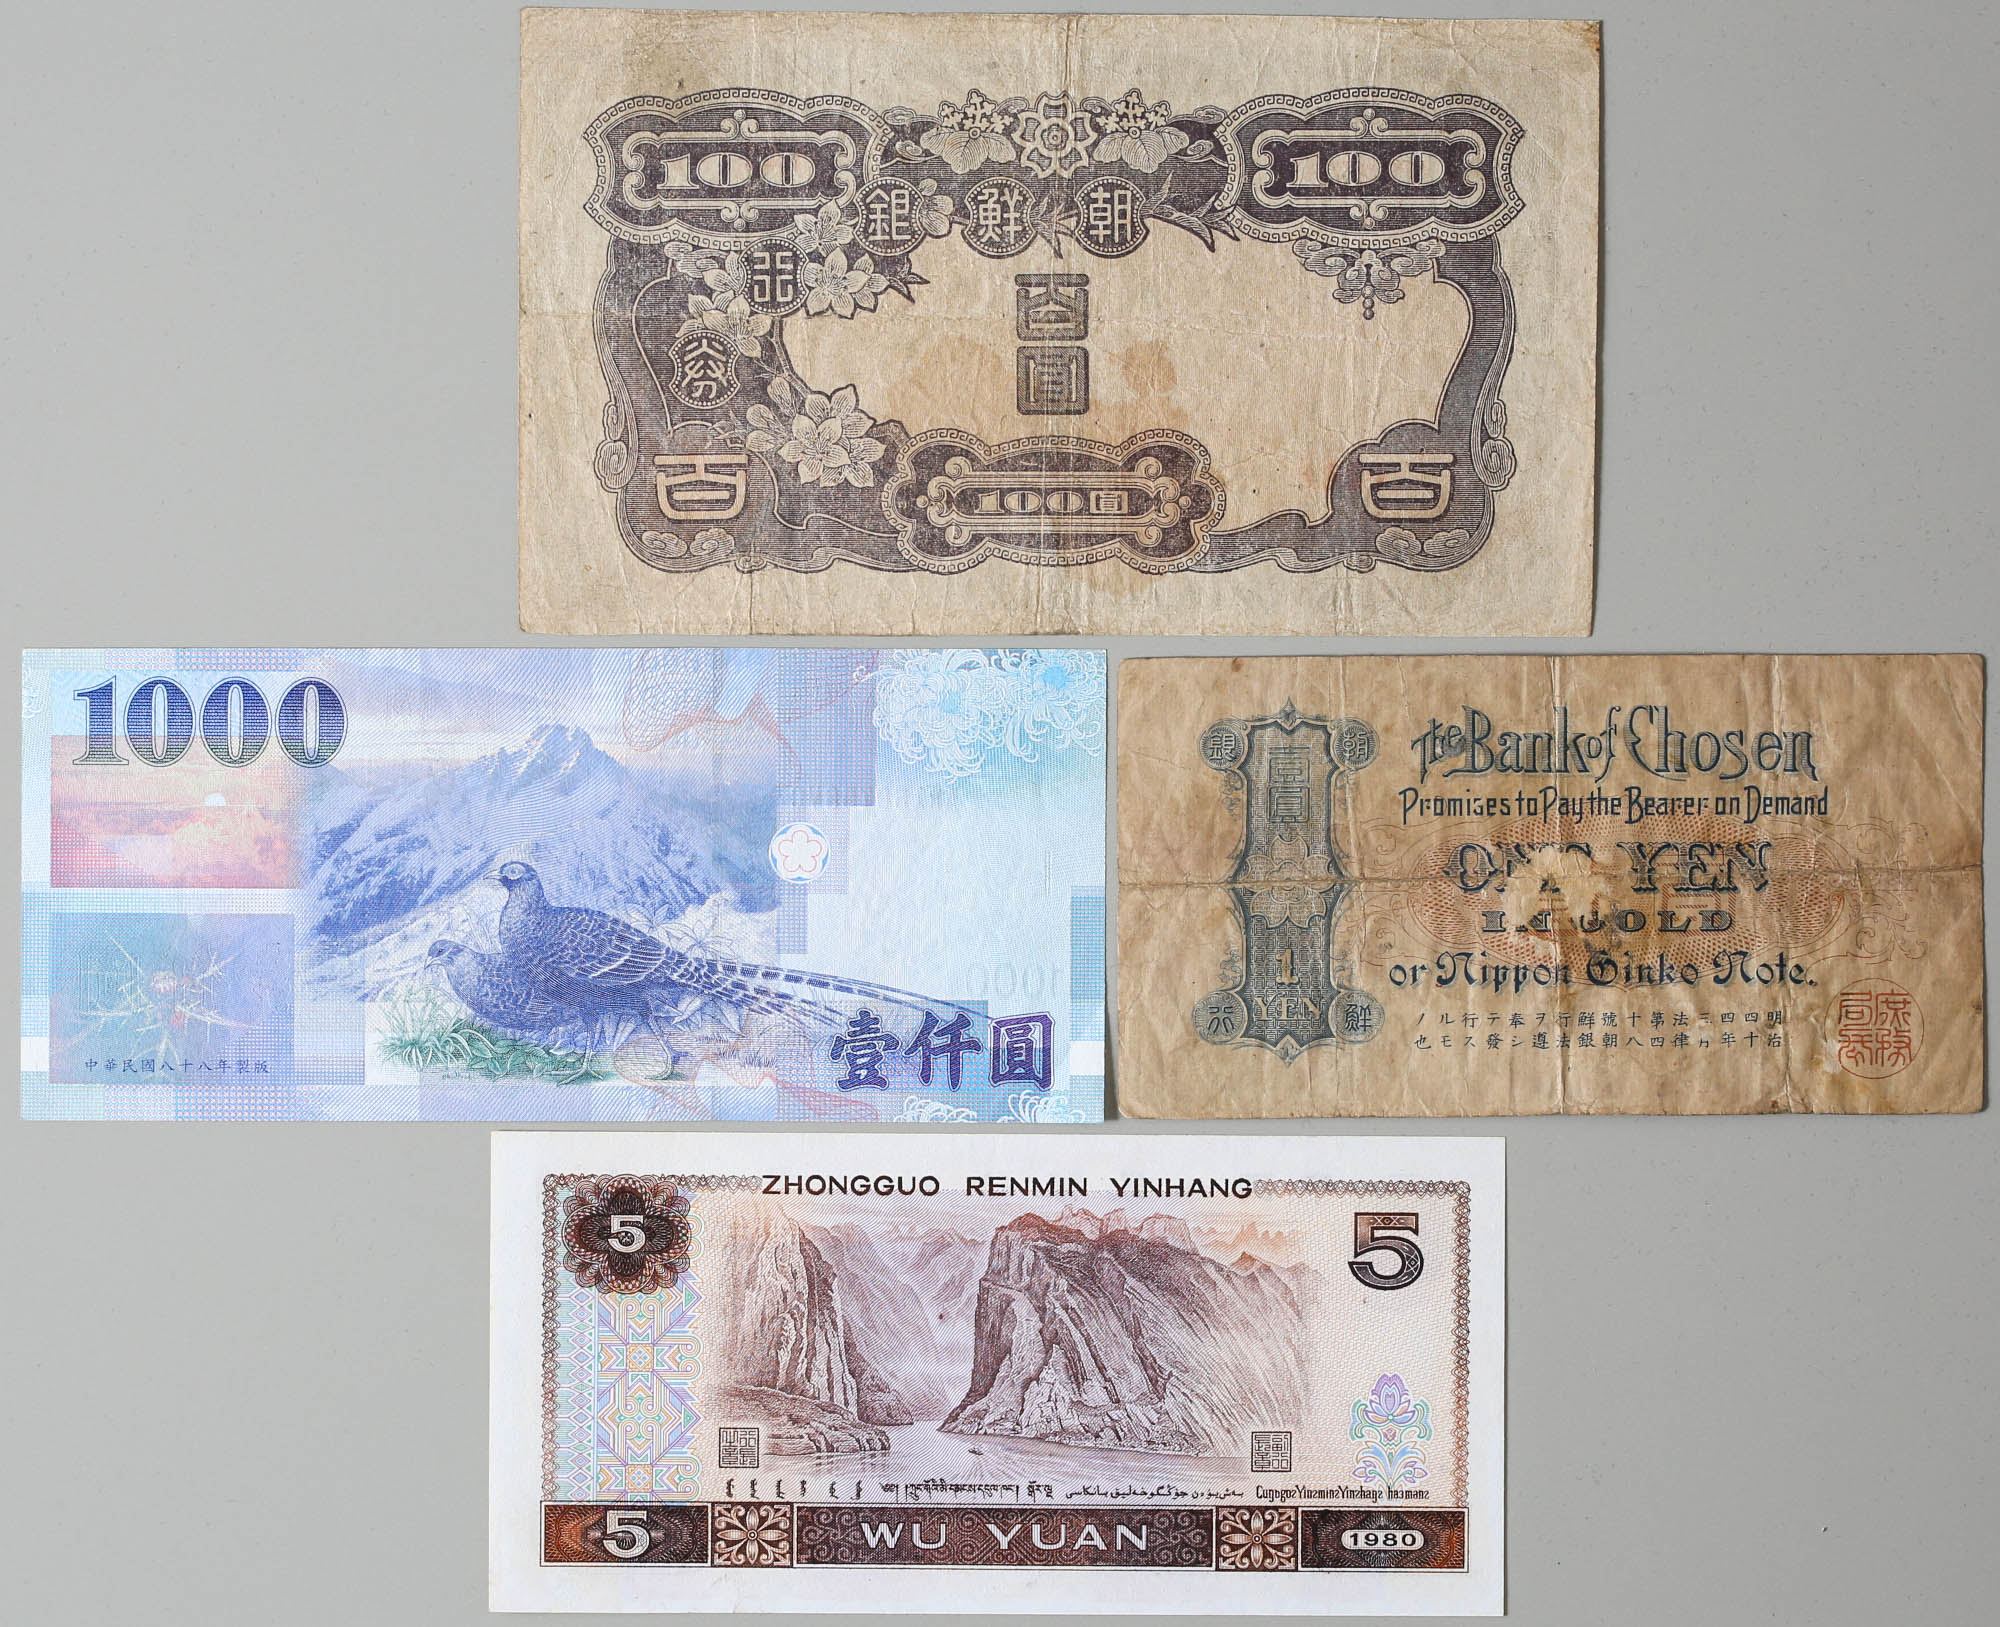 Coin Museum | 朝鮮銀行券百円一円二枚セット中華民国中央银行1000円一